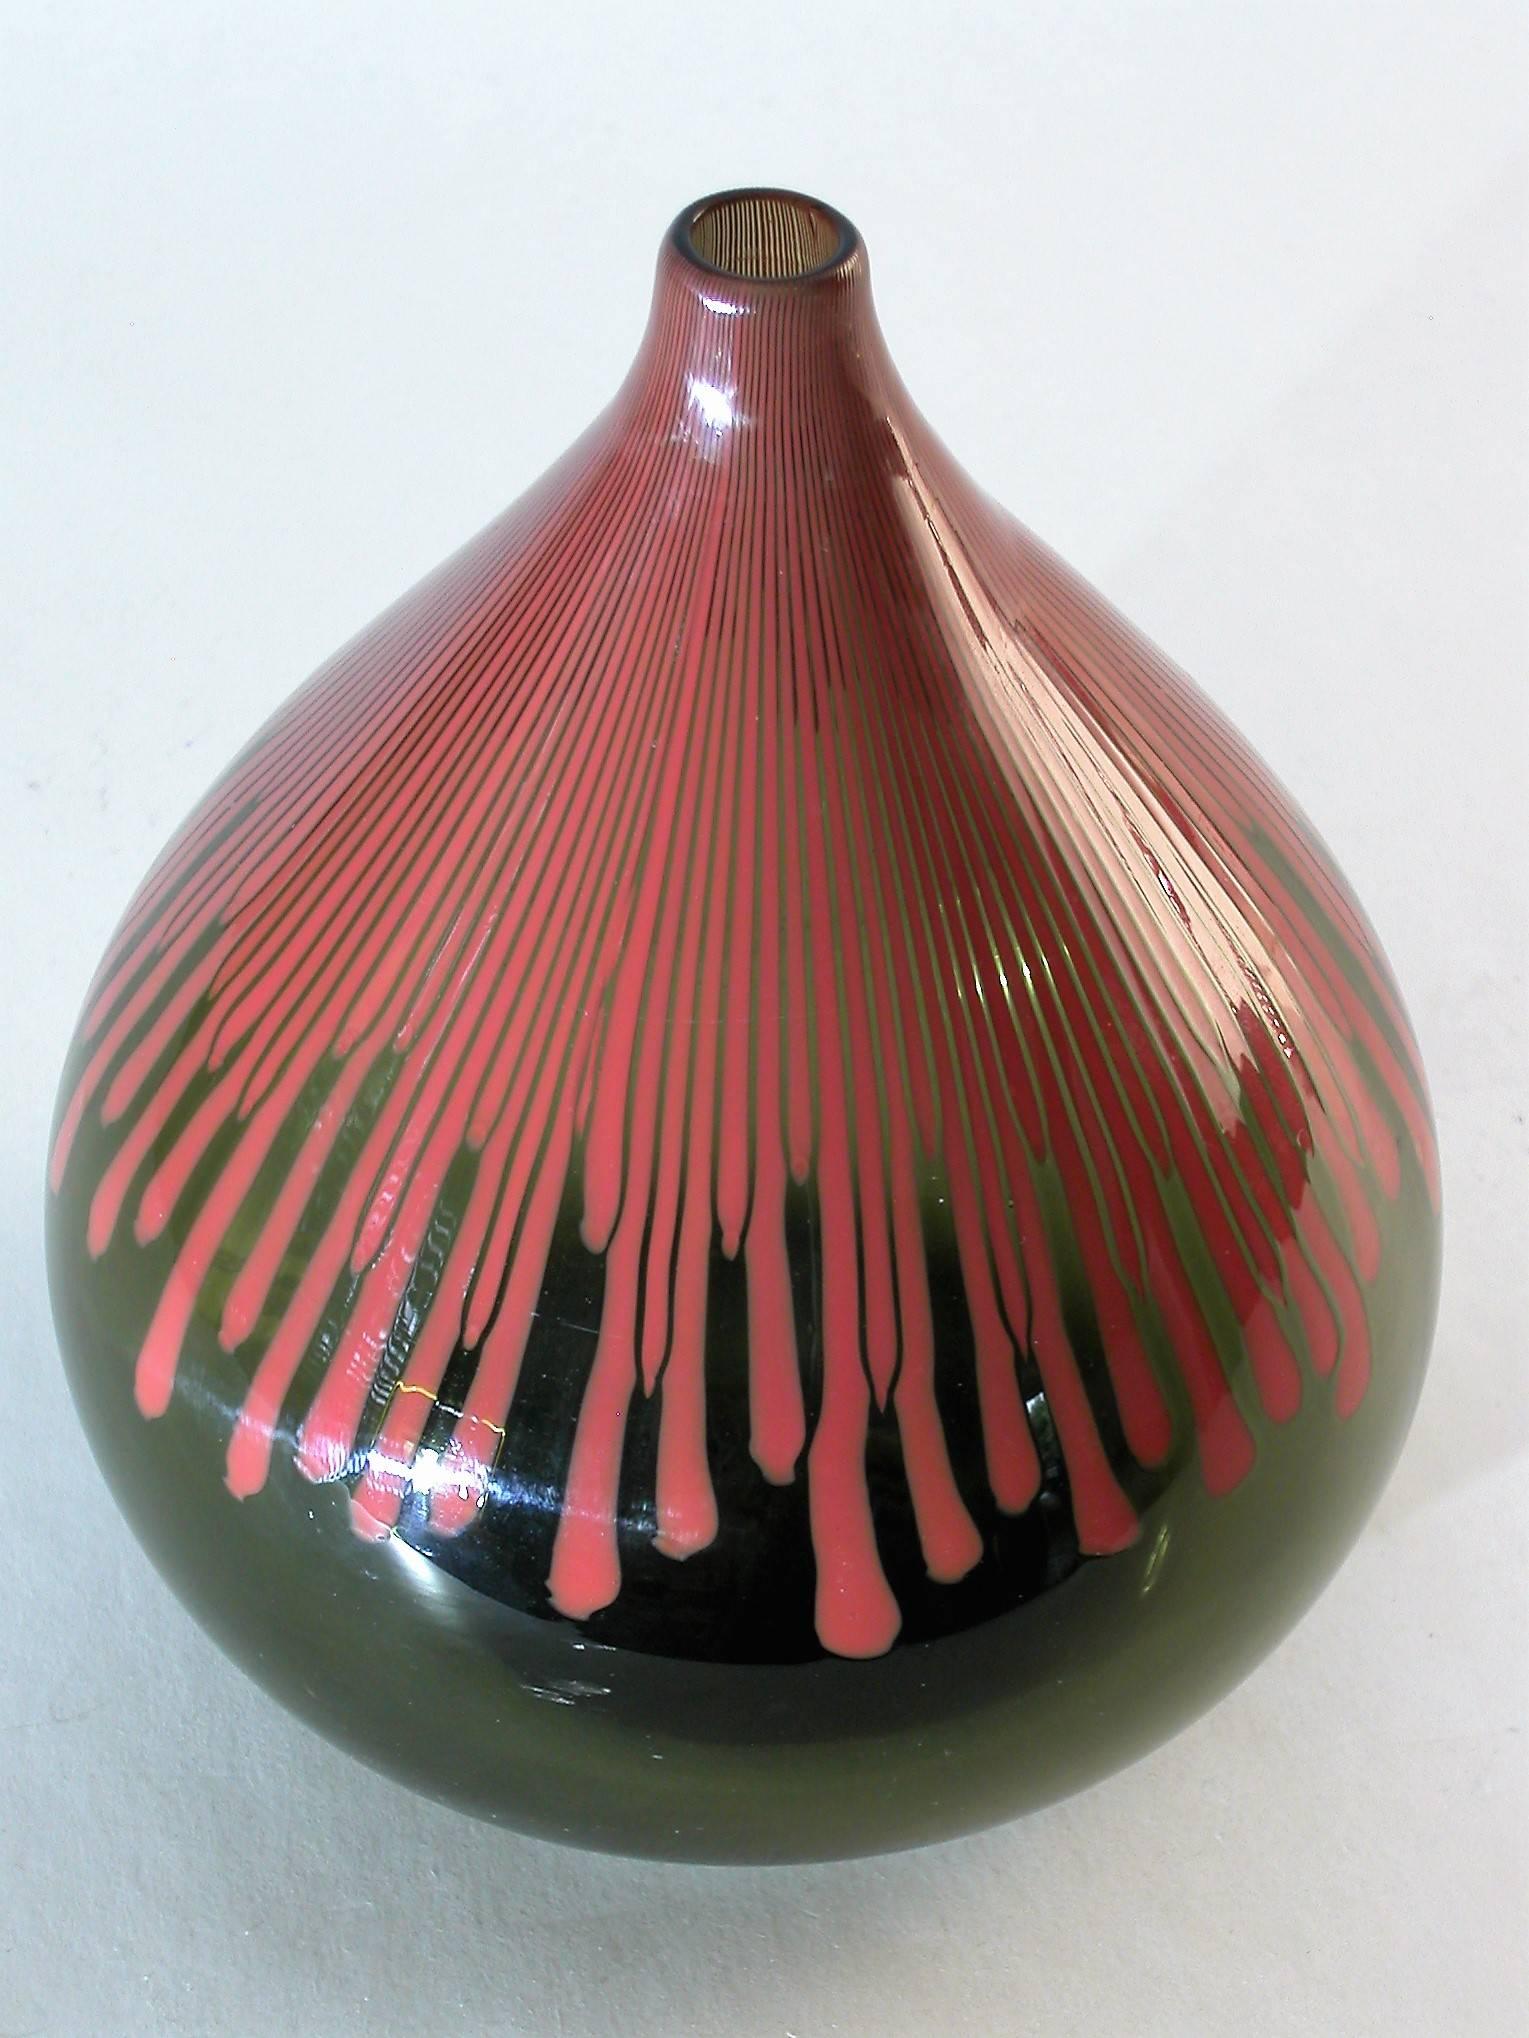 Venini Murano "Cannetti" glass vase by Ludovico Diaz de Santillana, 1960.

This beautiful vase was designed by Ludovico Diaz de Santillana and was produced by venini, 1960 in Italy.

Model 713.1
blown glas
Excellent